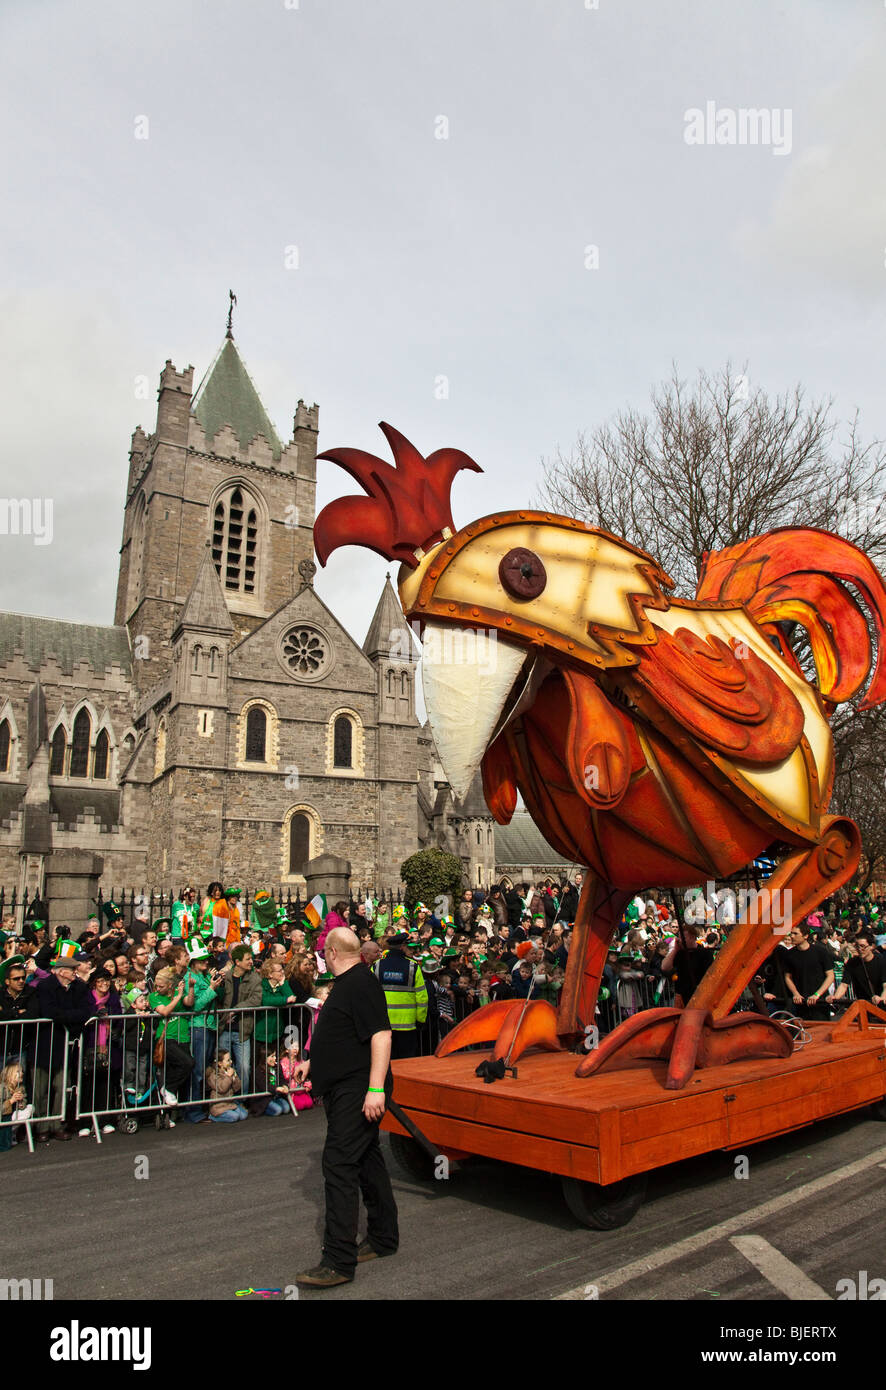 St. Patrick's Day parade. Dublin, Ireland. Stock Photo